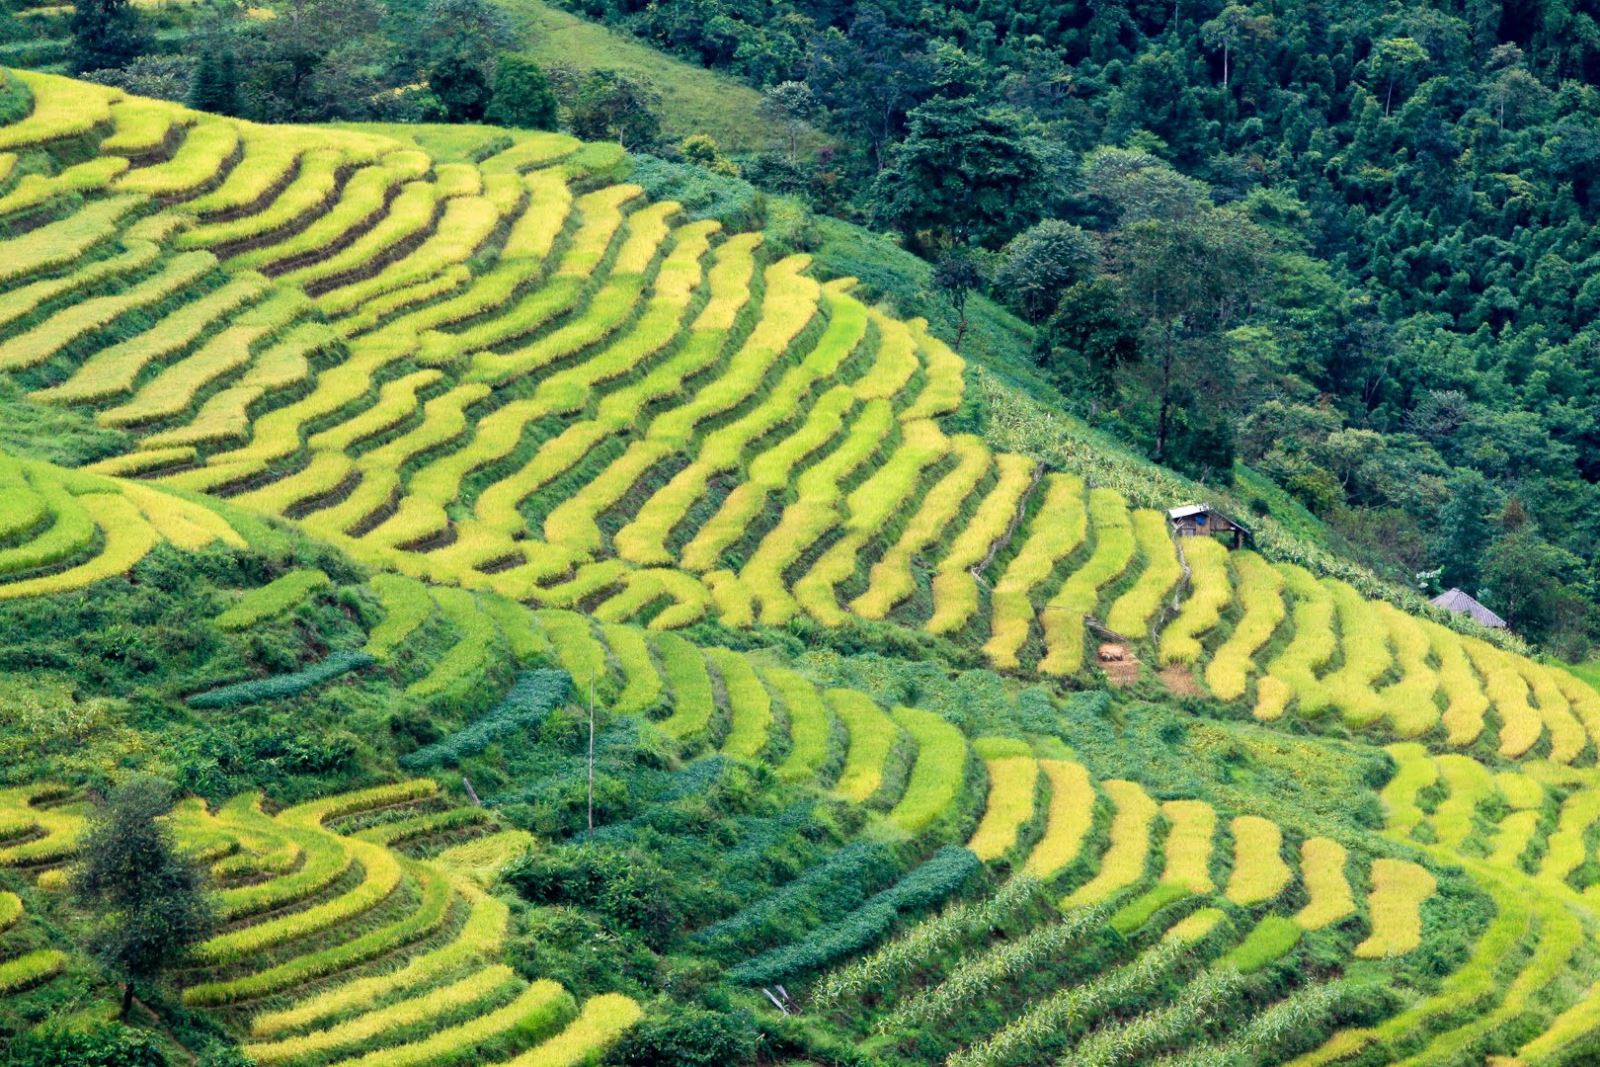 Ripening rice fields in Vietnam’s northwestern region